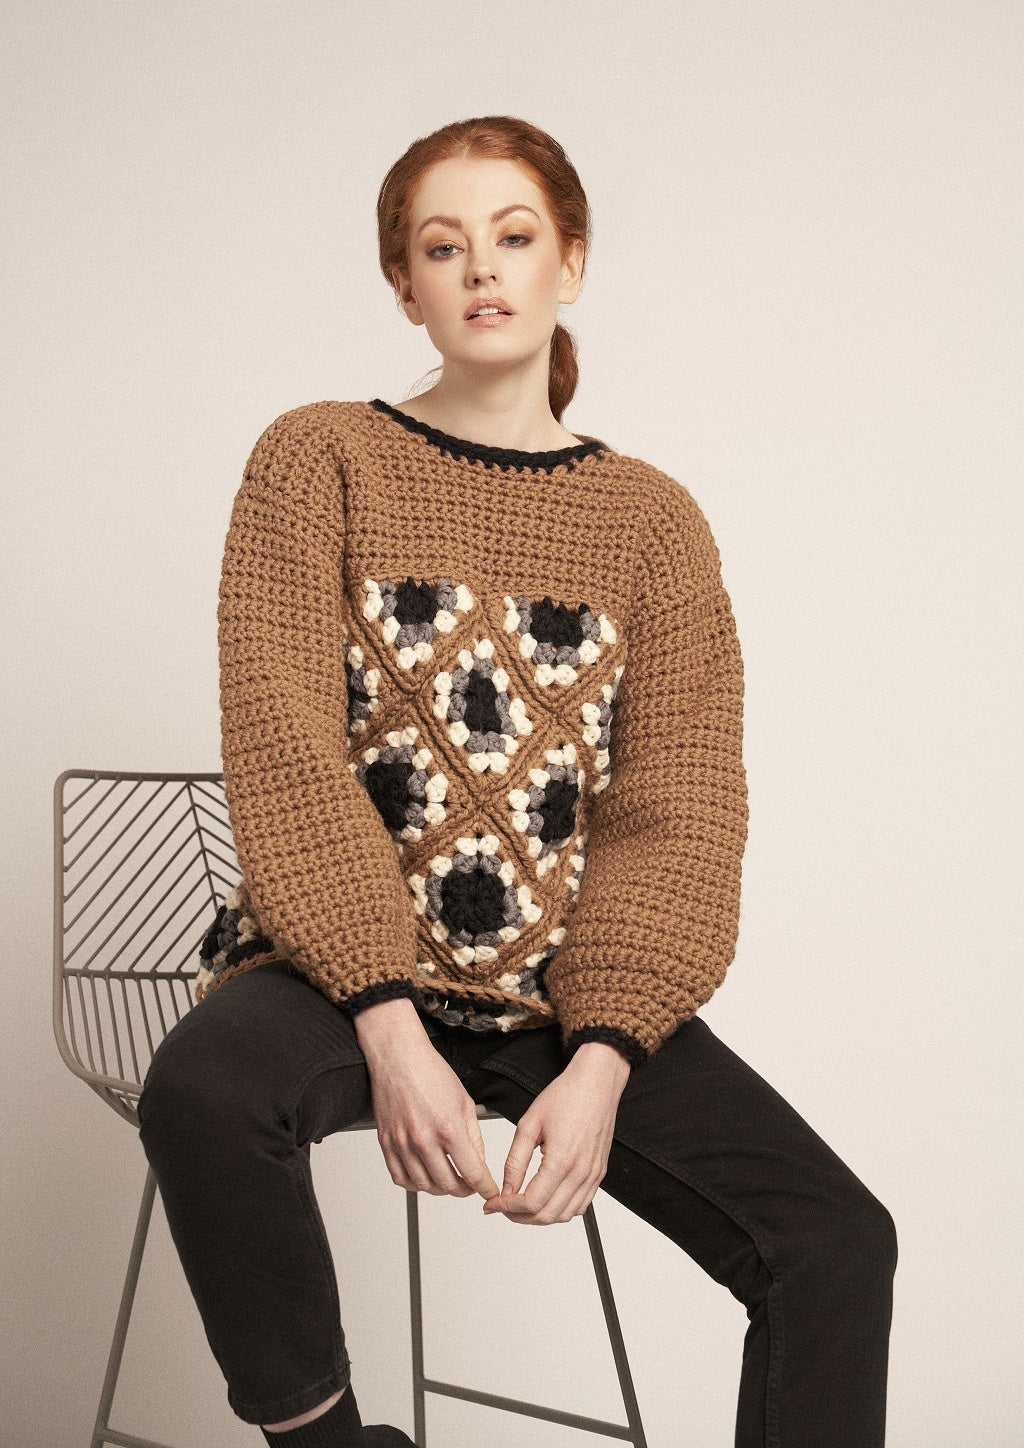 Rowan Crochet In-Style: 11 Designs by Emma Wright